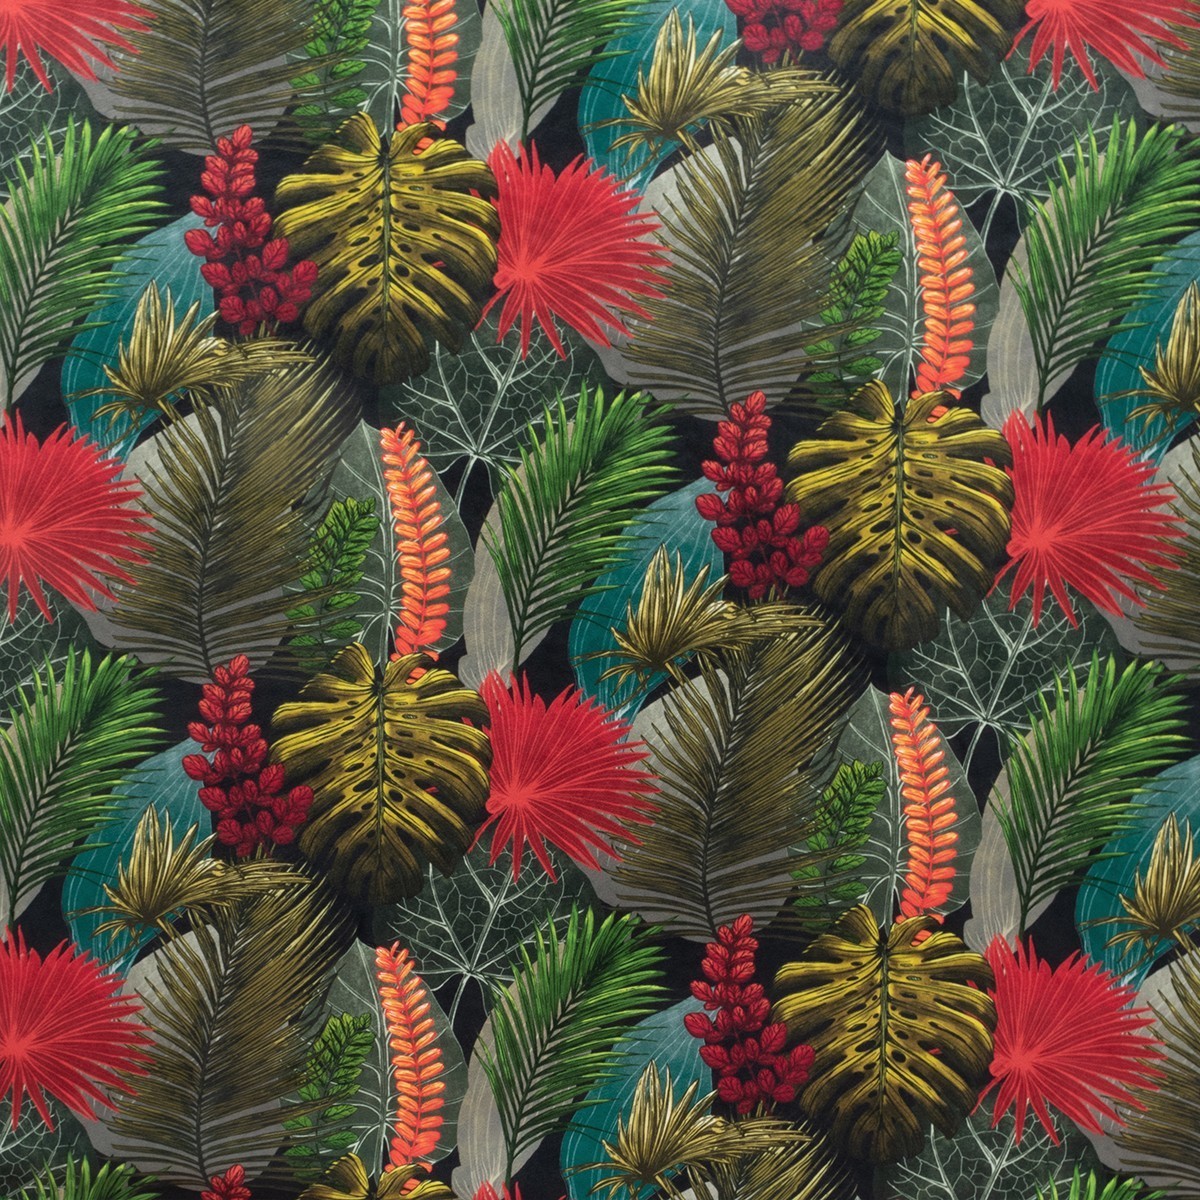 Rainforest Toucan Fabric by Fibre Naturelle